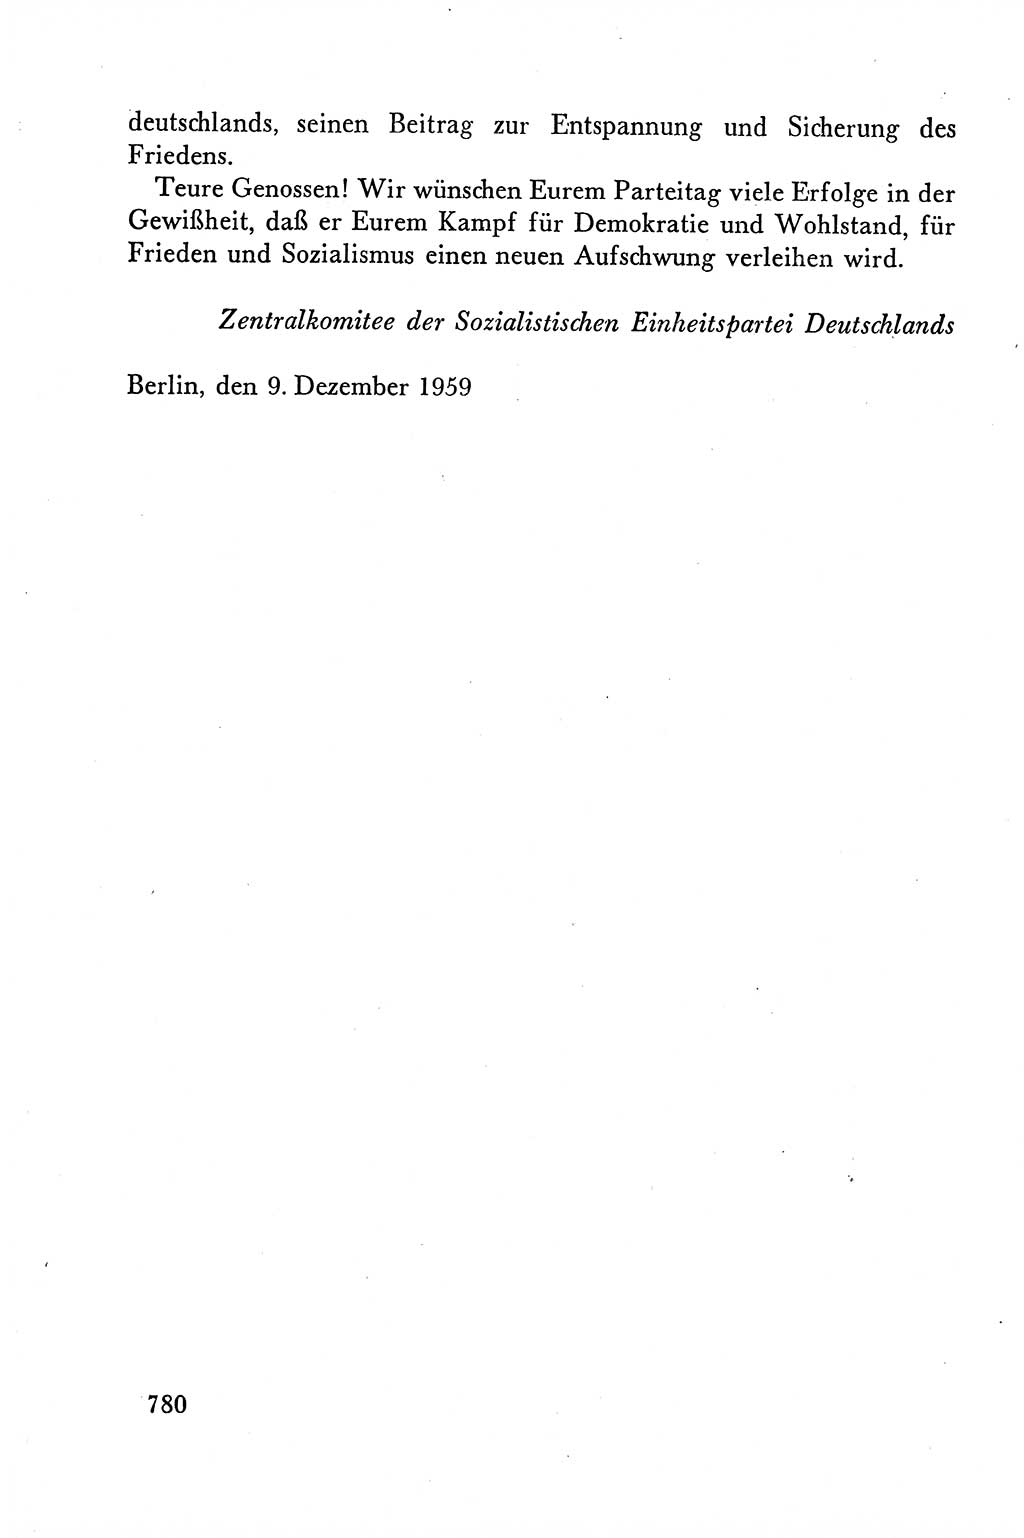 Dokumente der Sozialistischen Einheitspartei Deutschlands (SED) [Deutsche Demokratische Republik (DDR)] 1958-1959, Seite 780 (Dok. SED DDR 1958-1959, S. 780)